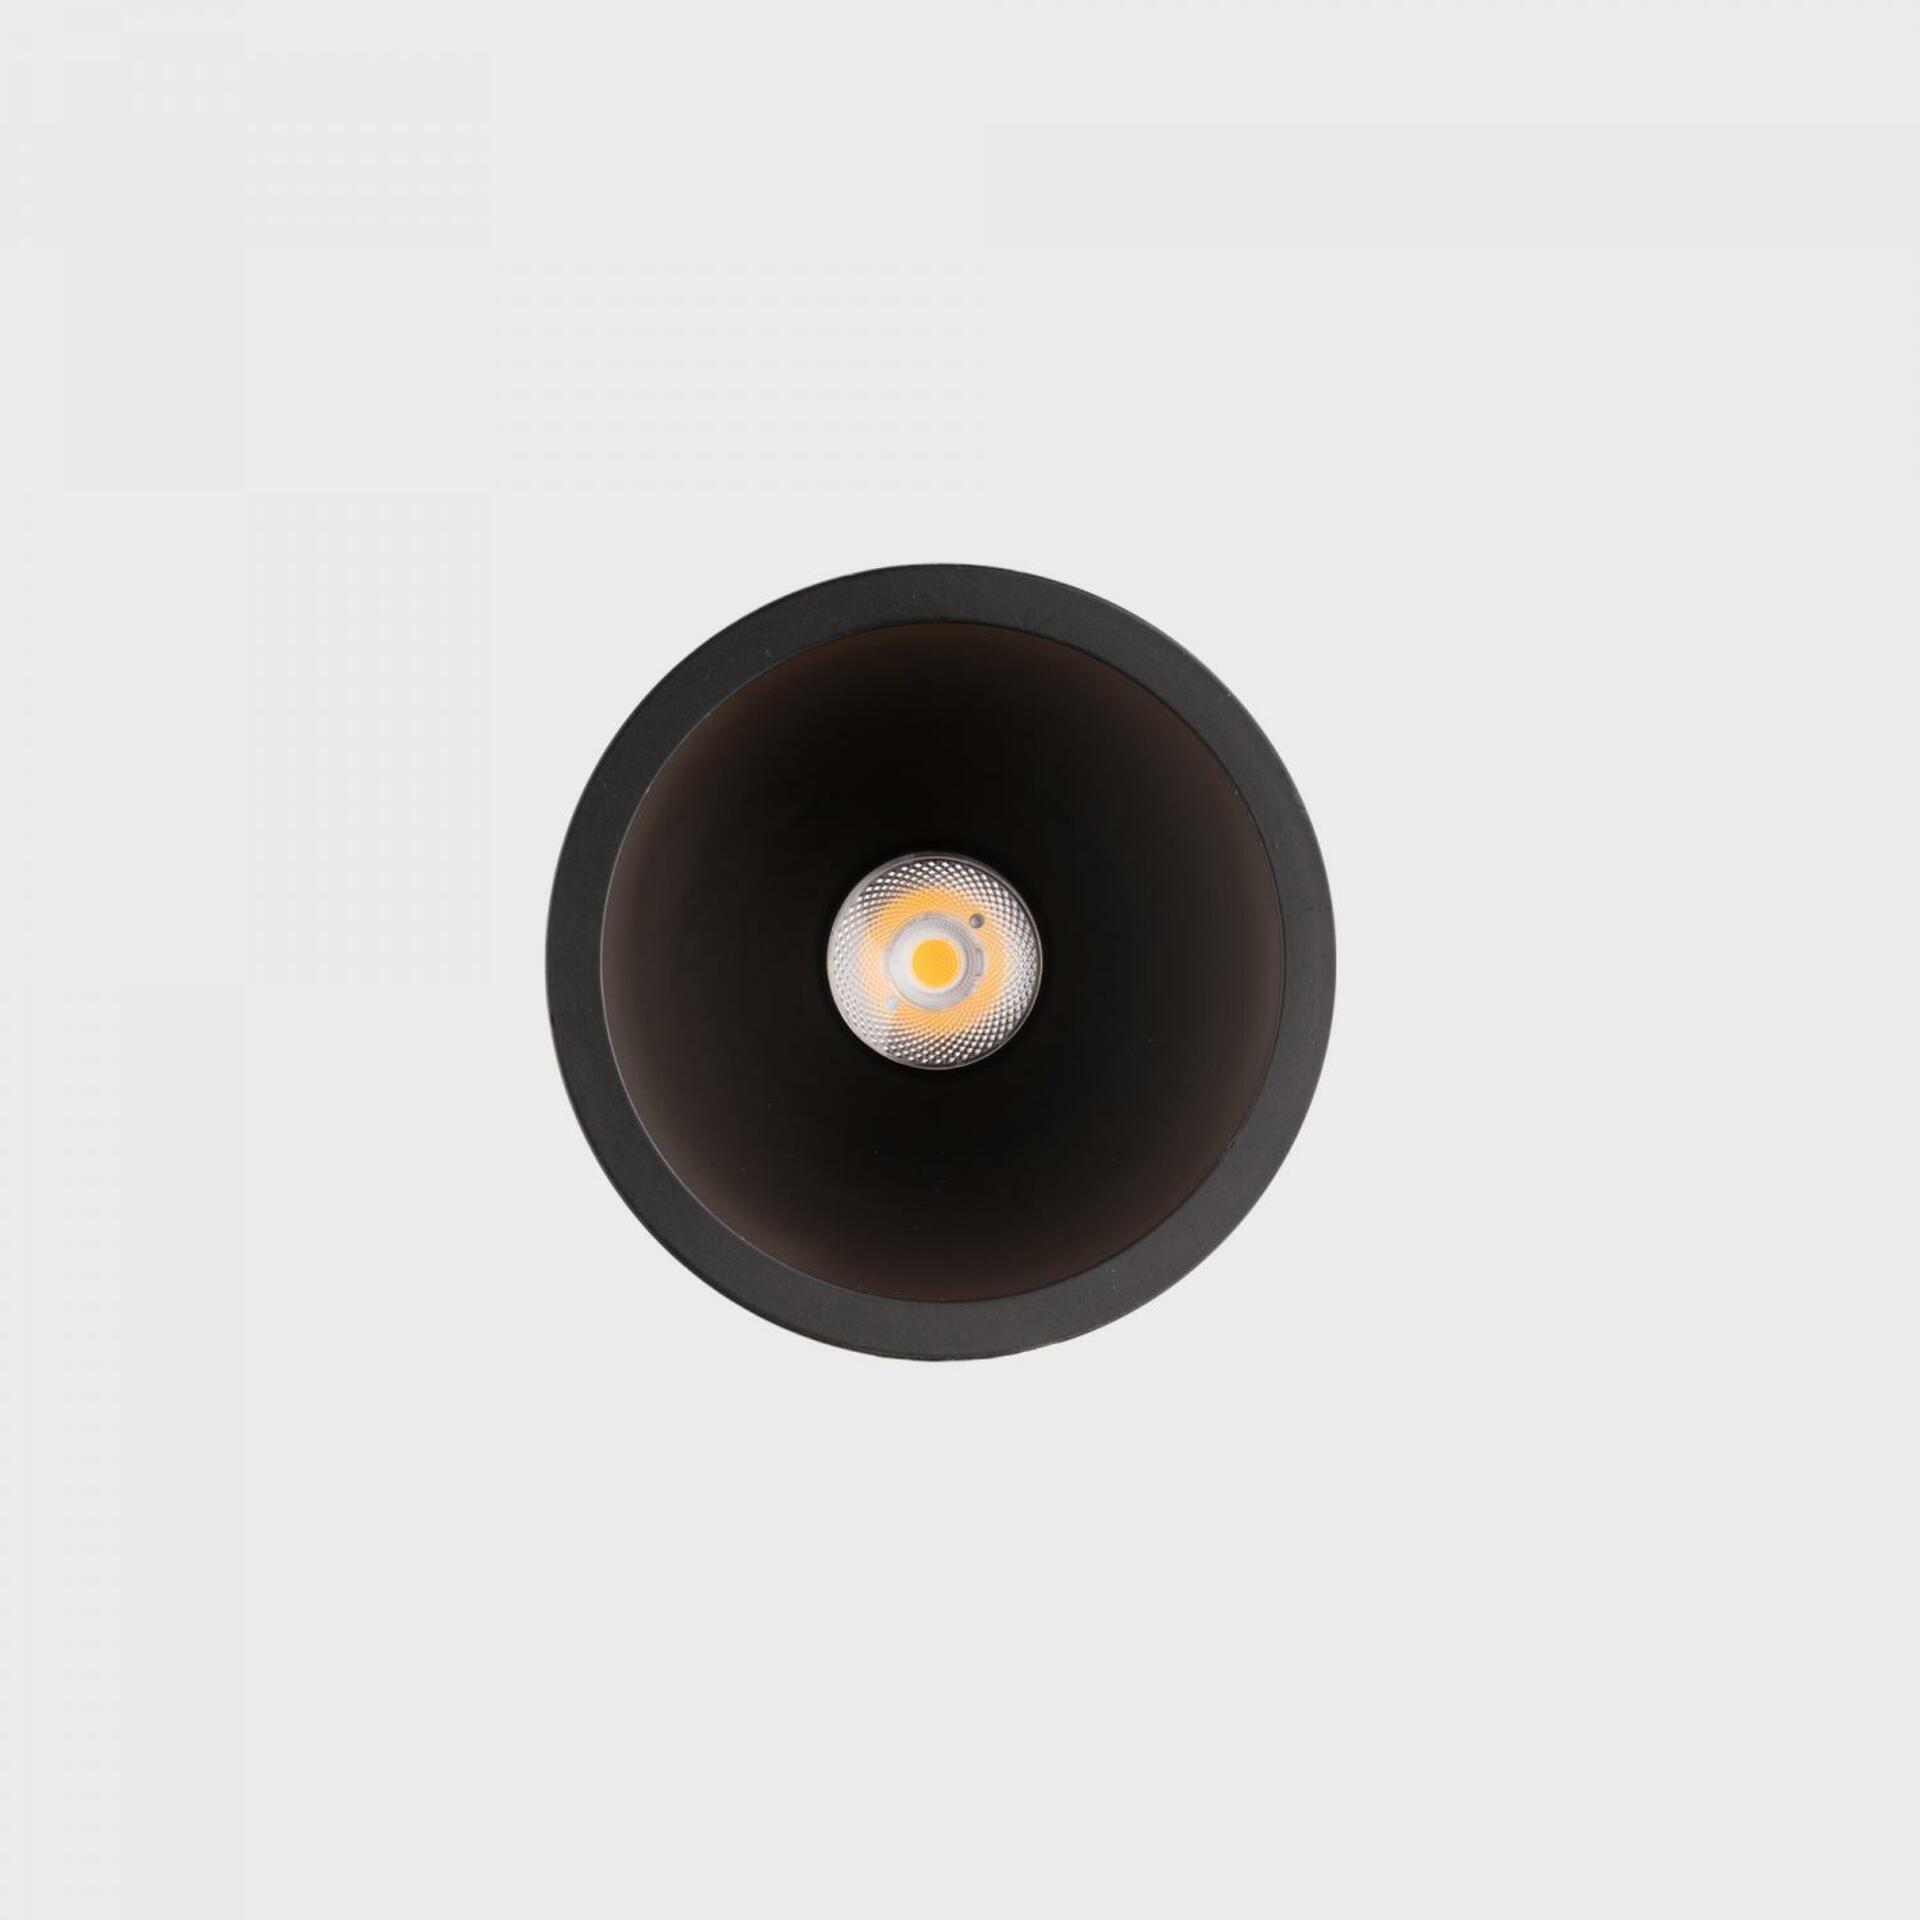 KOHL LIGHTING KOHL-Lighting NOON zapuštěné svítidlo s rámečkem pr. 70 mm černá 38° 5 W  CRI 80 2700K Non-Dimm